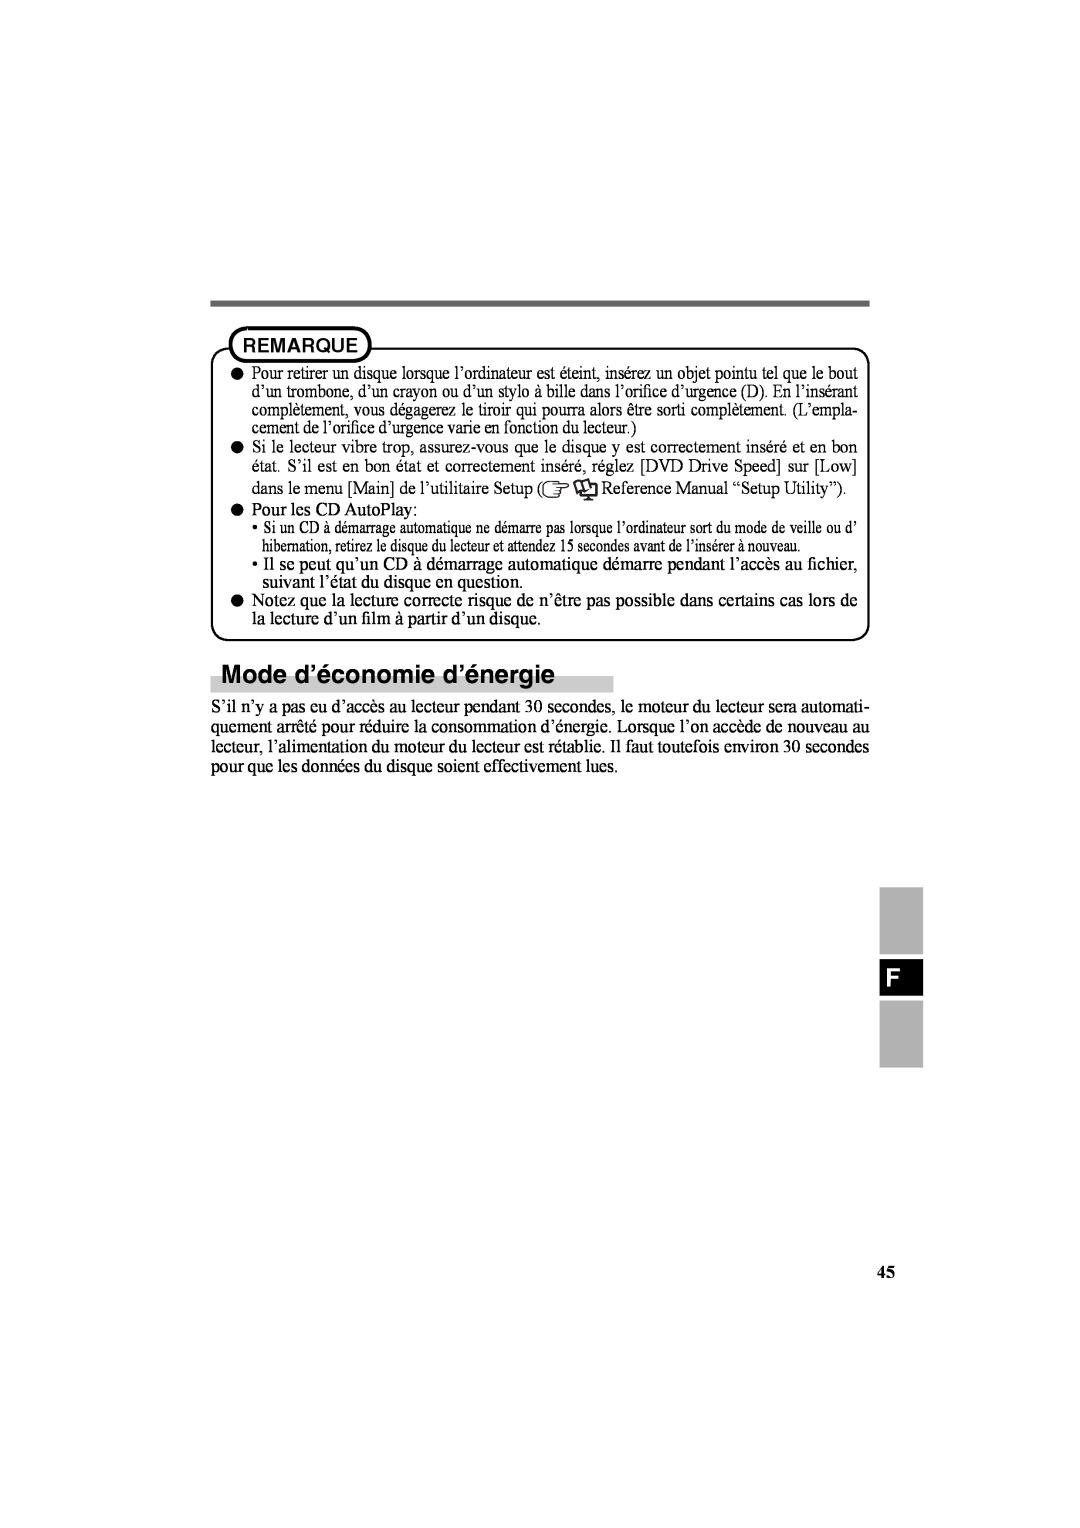 Panasonic CF-VDR301U specifications Mode d’économie d’énergie, Remarque 